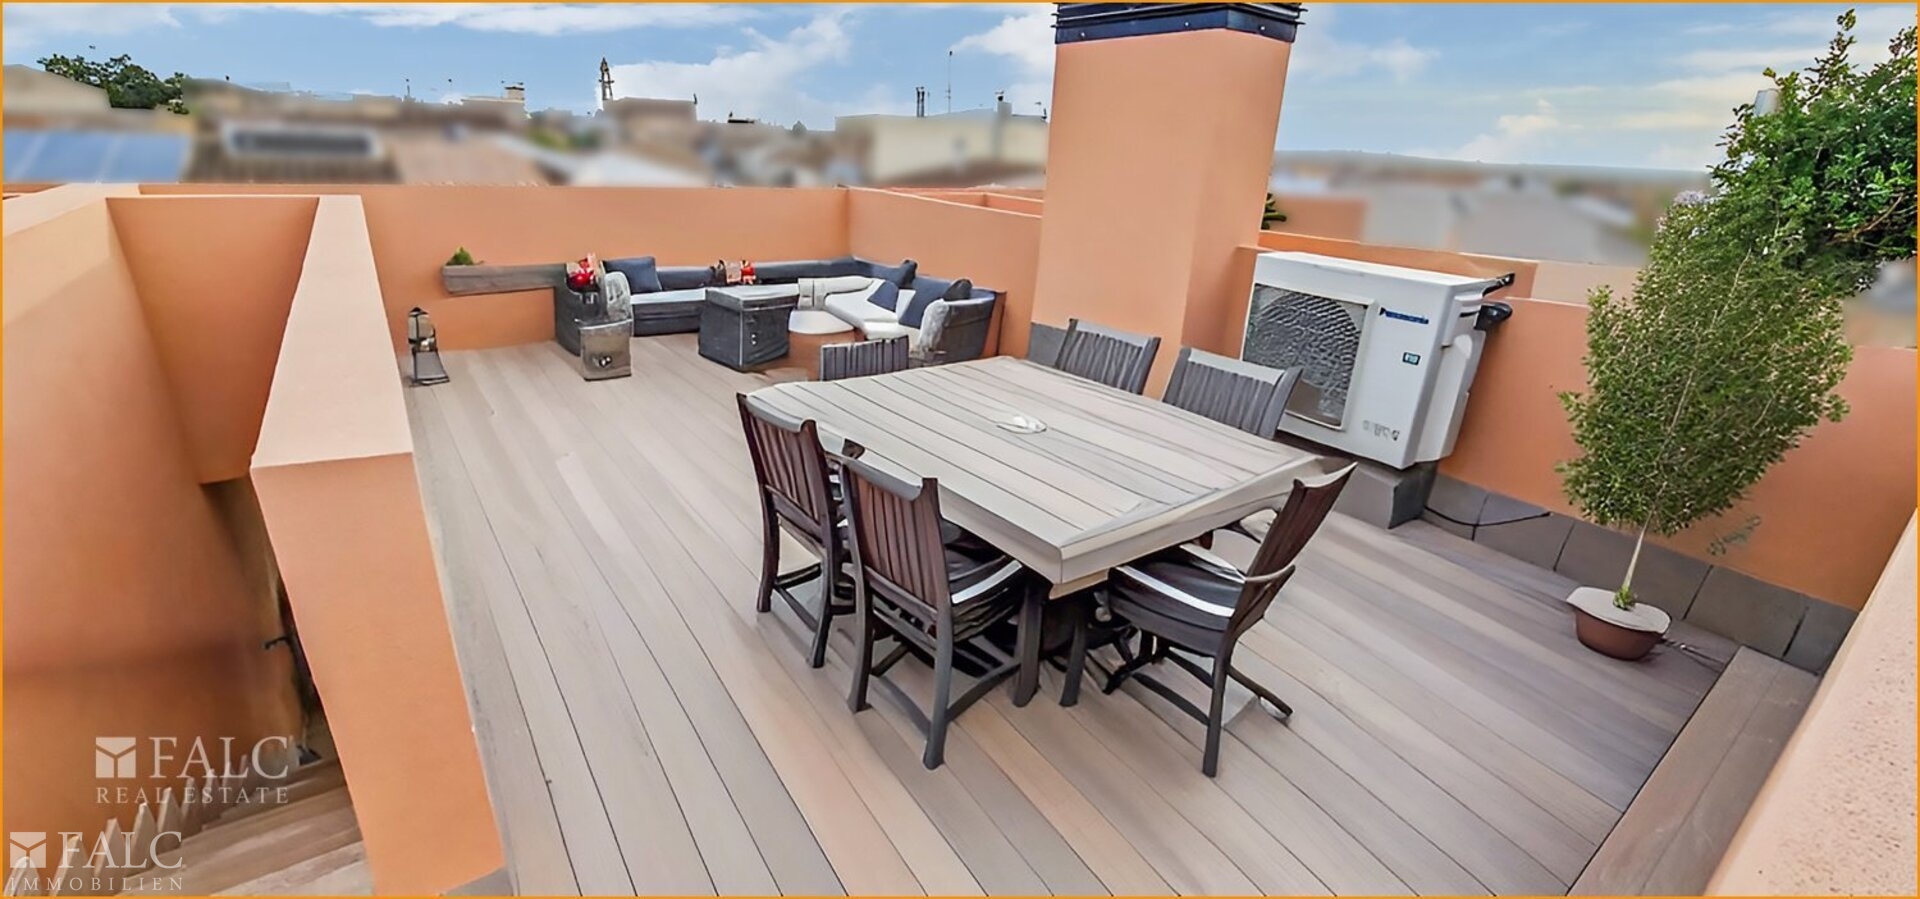 Dachterrasse/azotea/roof terrace gestaged